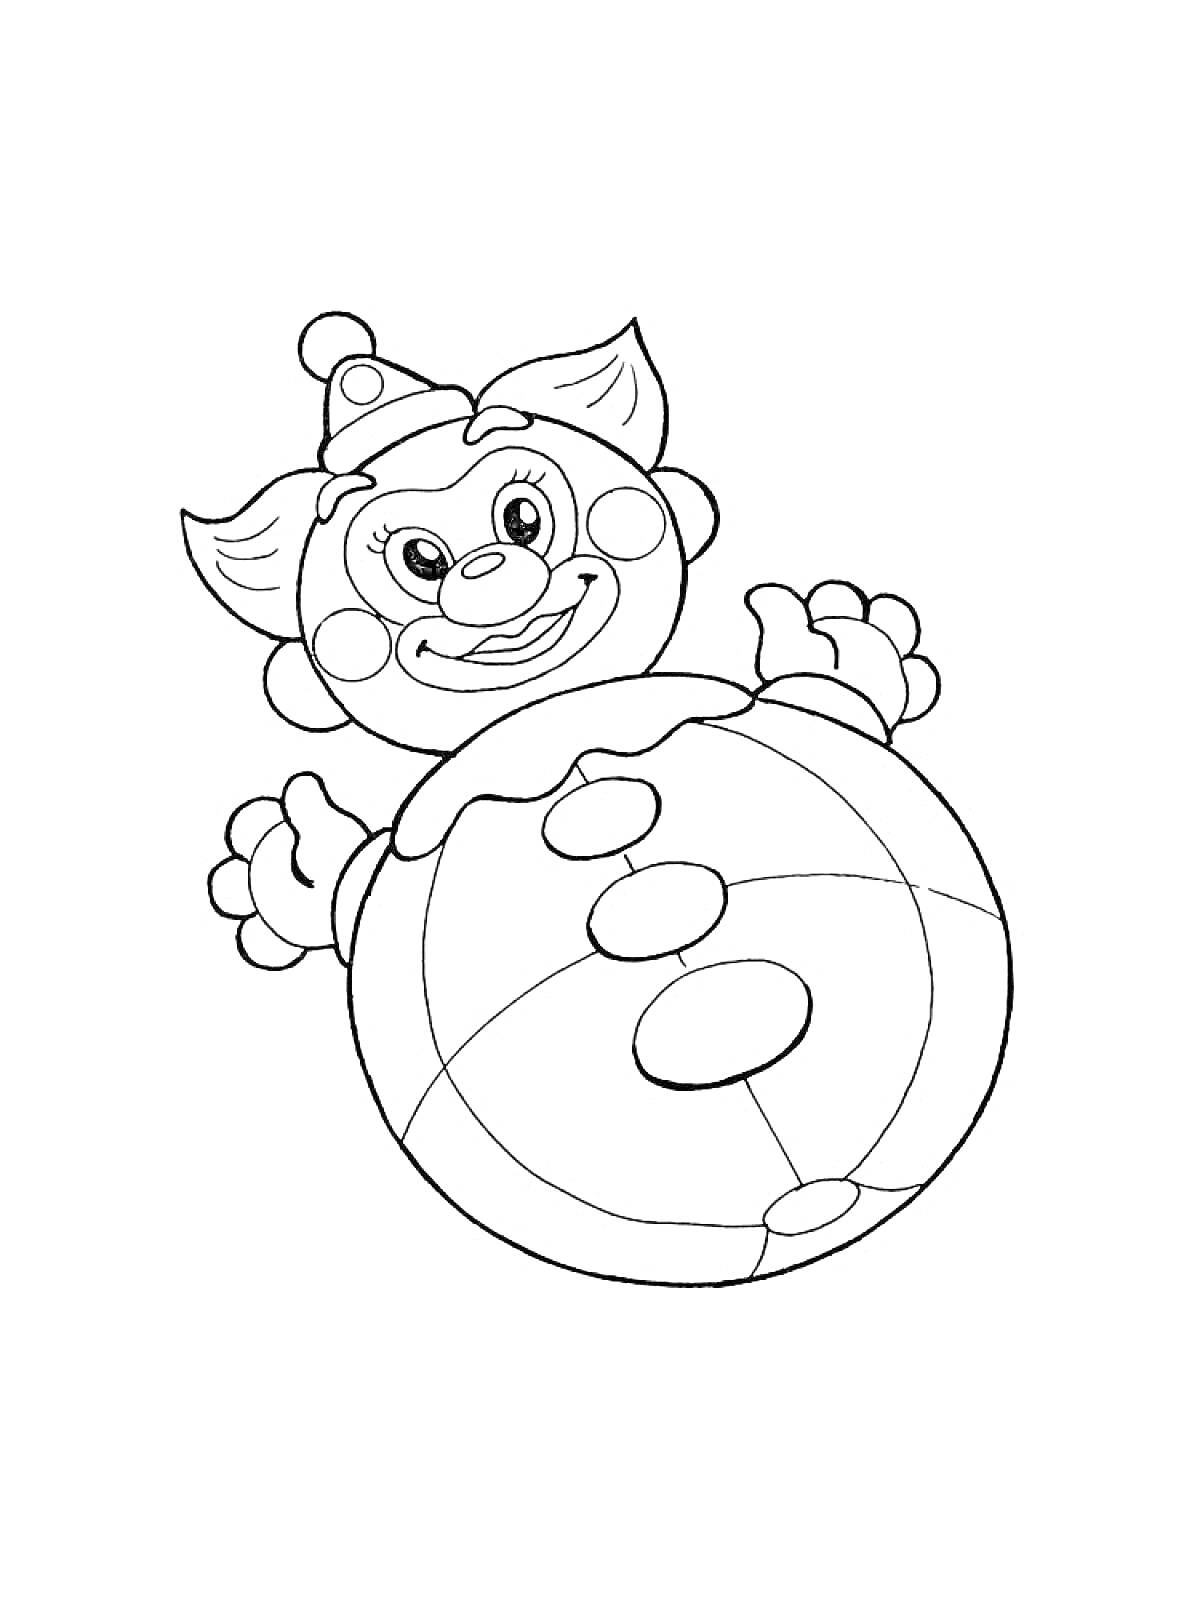 Раскраска Неваляшка с улыбкой и шапочкой, с большими ушами и лапками, сидящая на круглом основании с узорами